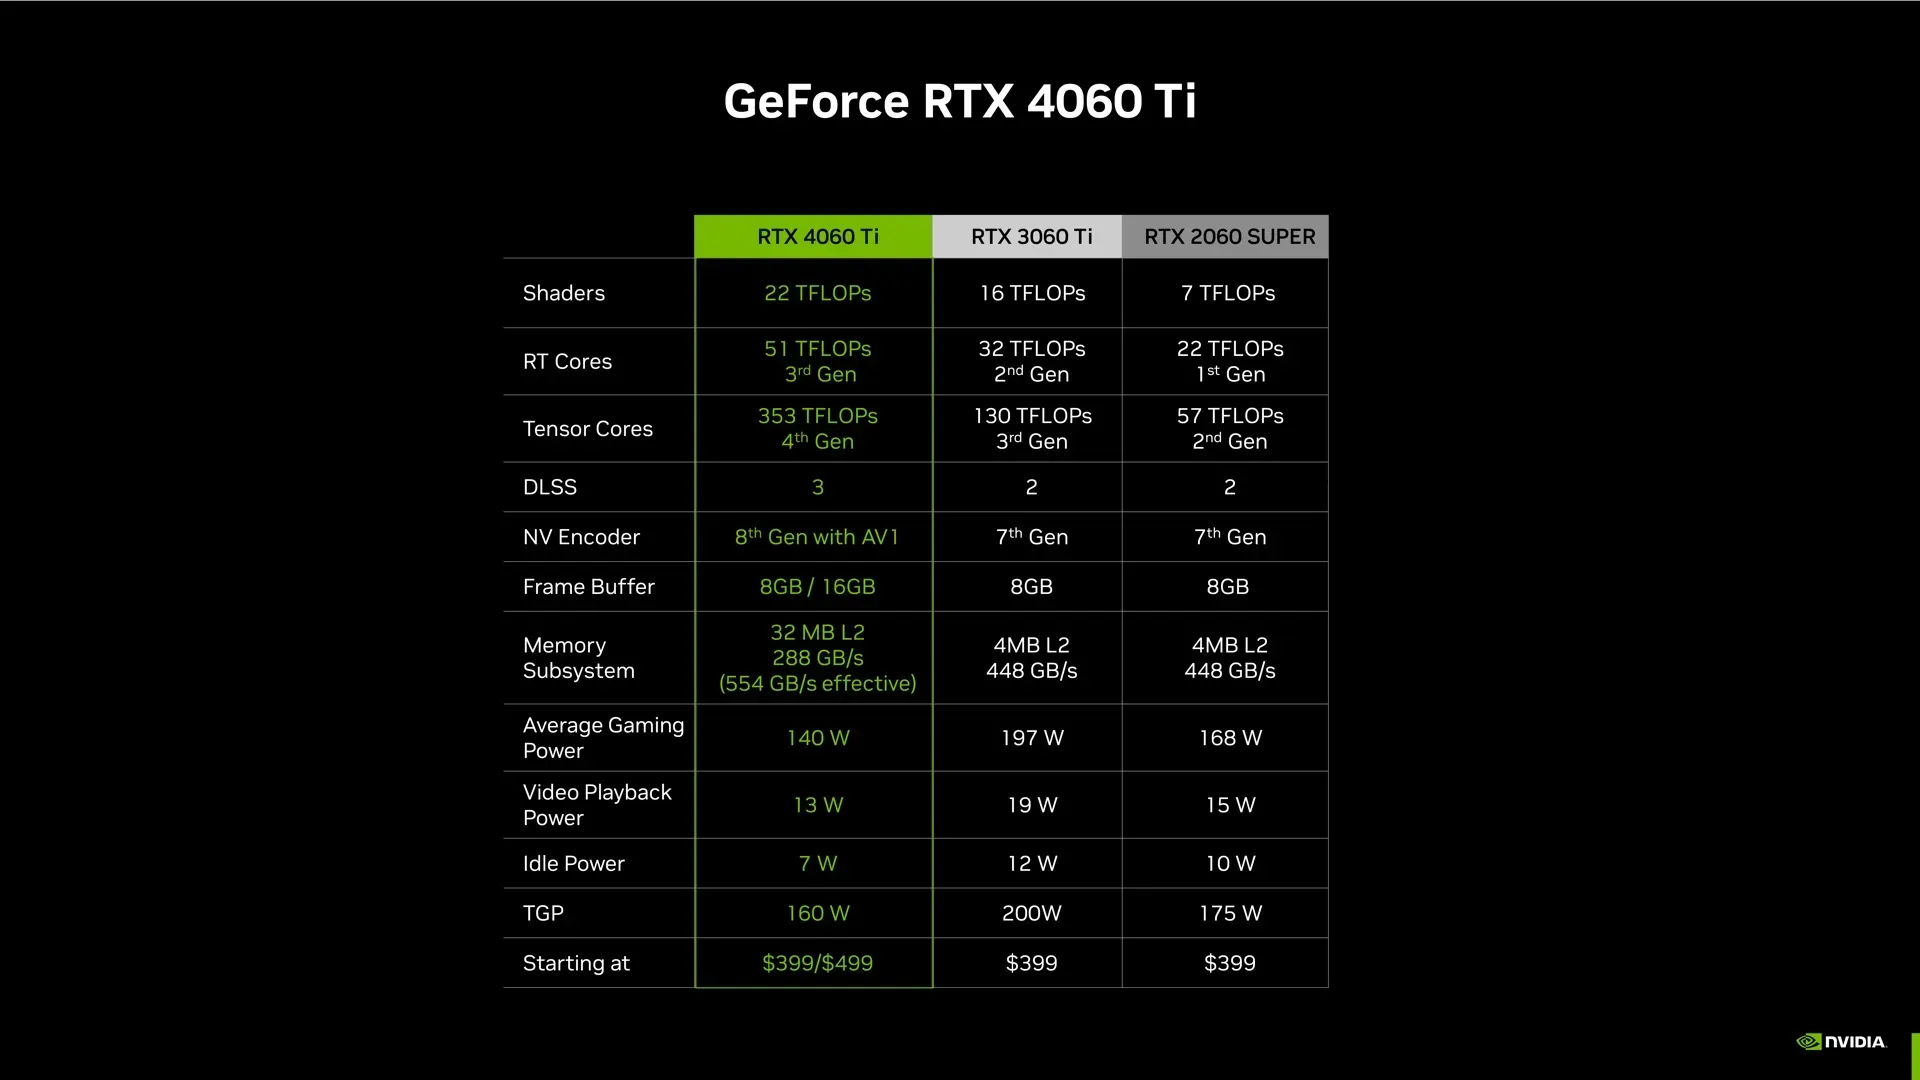 La conferencia de prensa de Nvidia usó números TFLOP en lugar de la cantidad de núcleos o el ancho del bus de memoria aquí, ya que los números no parecen muy halagadores fuera de contexto.